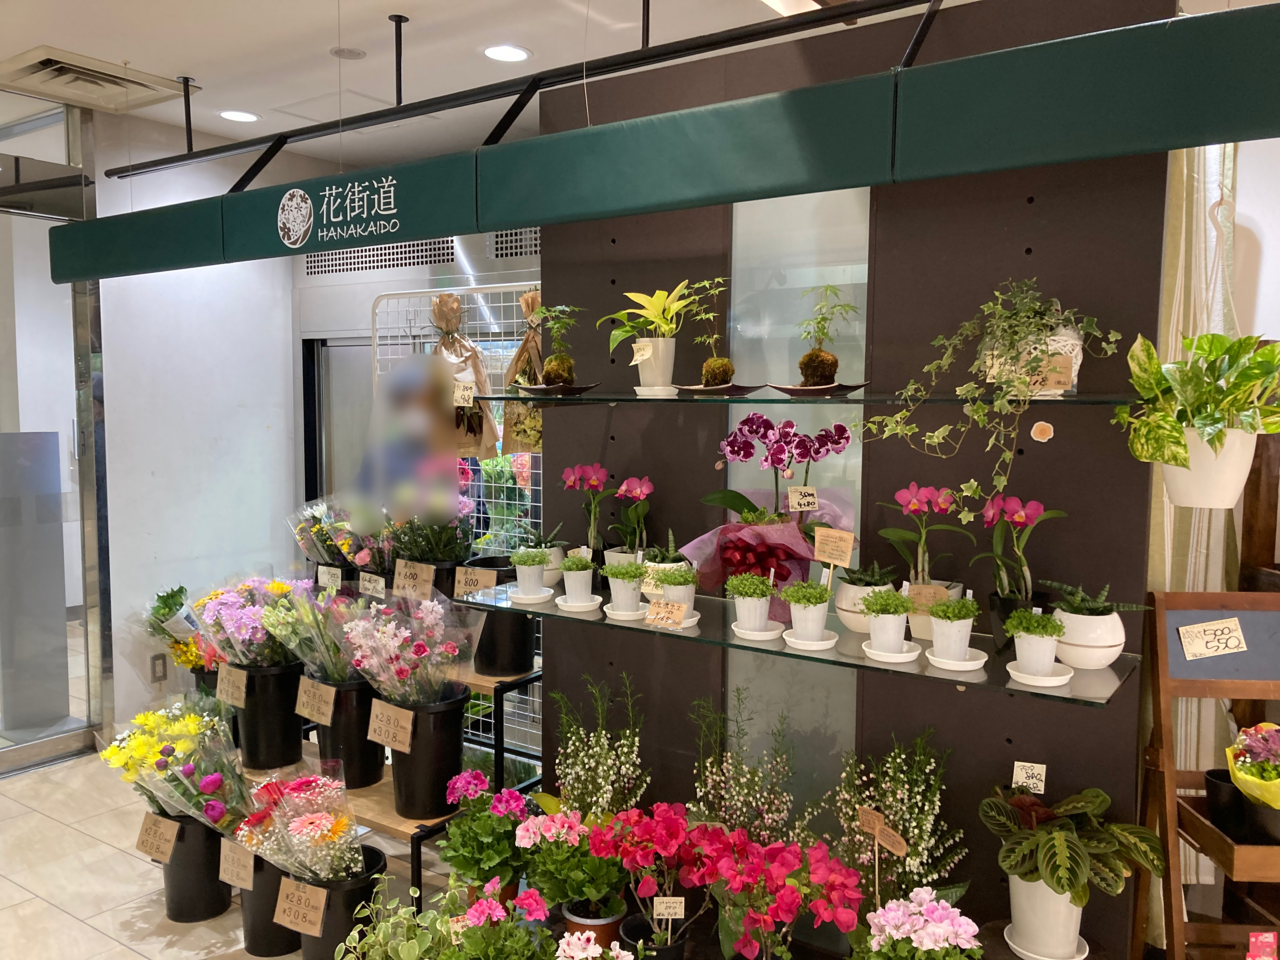 金沢市 金沢エムザにお花屋さんが新たにオープンしていました 号外net 金沢市